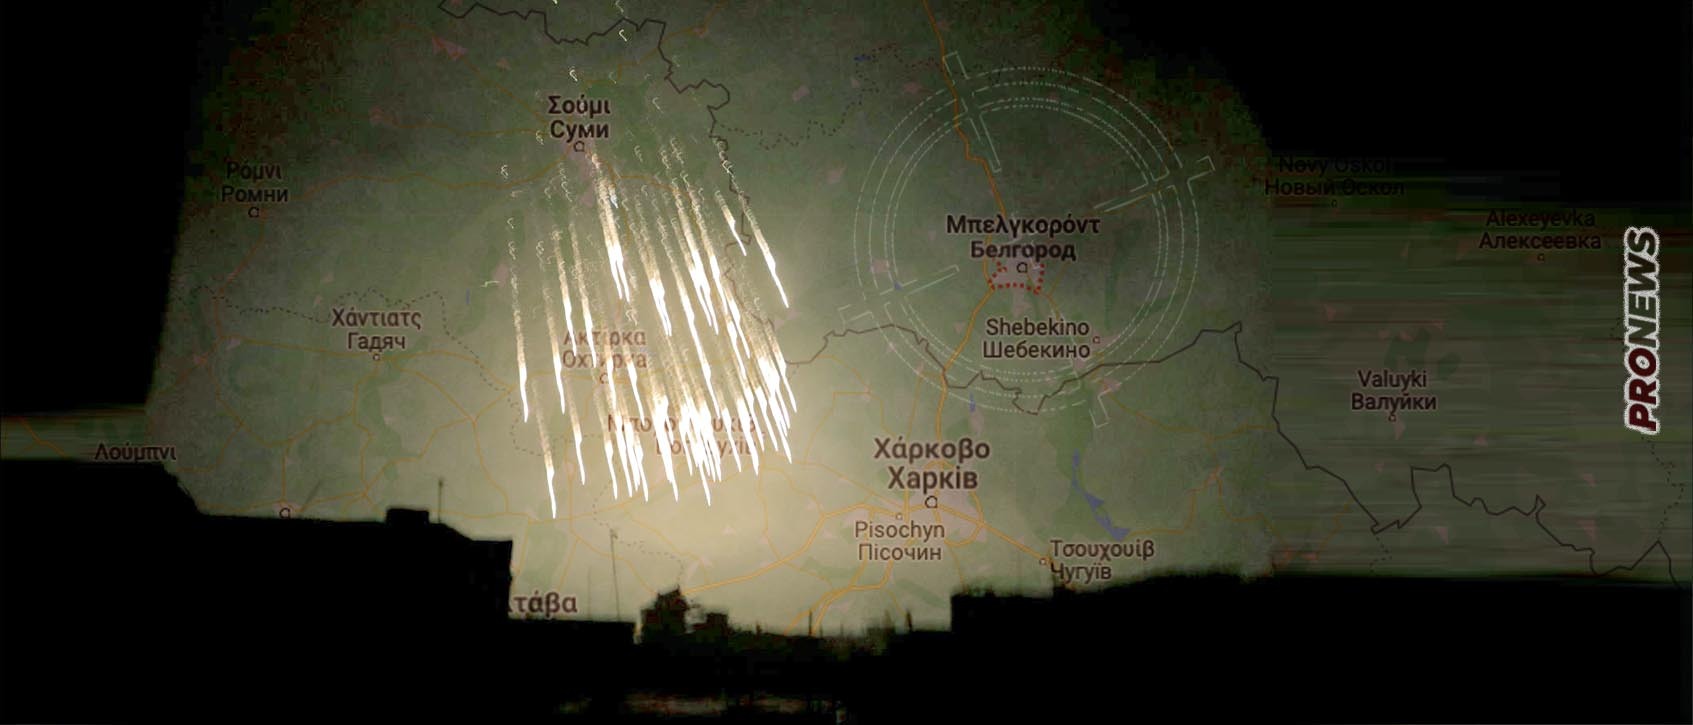 Οι Ουκρανοί έπληξαν με βλήματα λευκού φωσφόρου κατοικημένη περιοχή στην Ρωσία (βίντεο, φωτό)